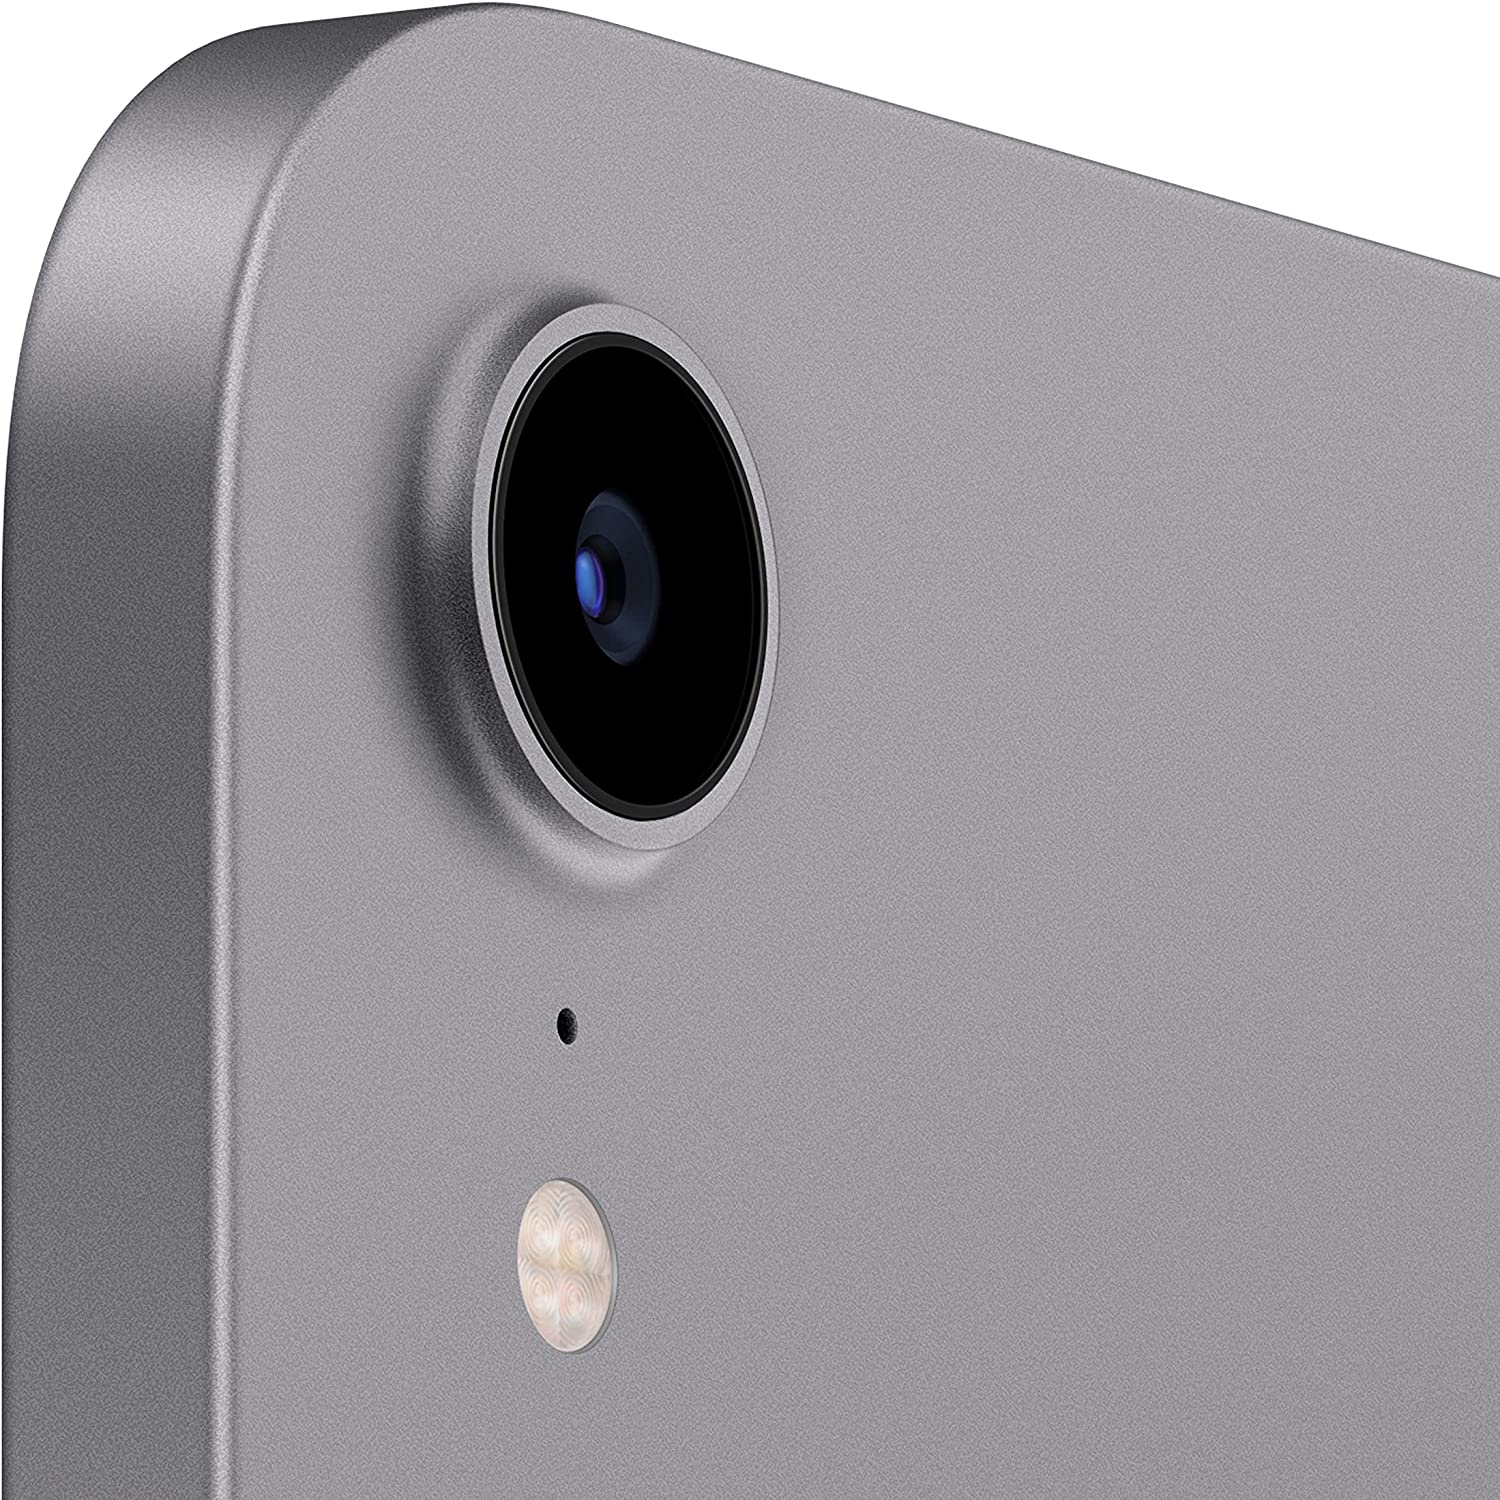 2021 Apple iPad Mini camera